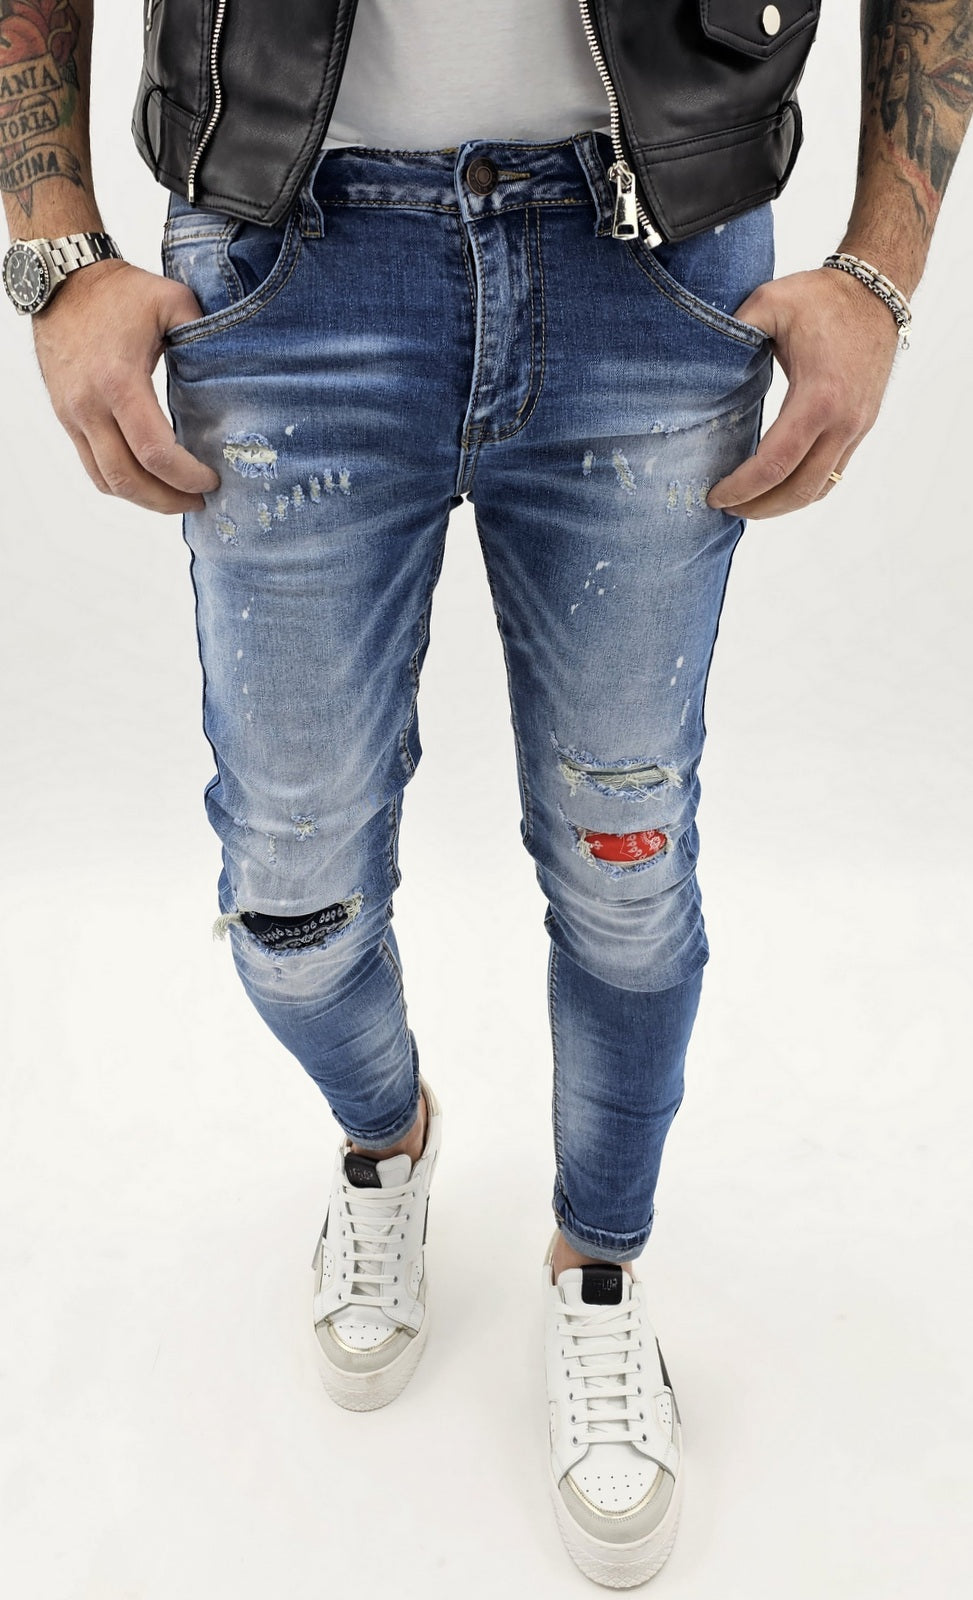 Jeans  Uomo Elasticizzati Strappi toppe bandana pittura  caviglia stretta 42,44,46,48,50,52